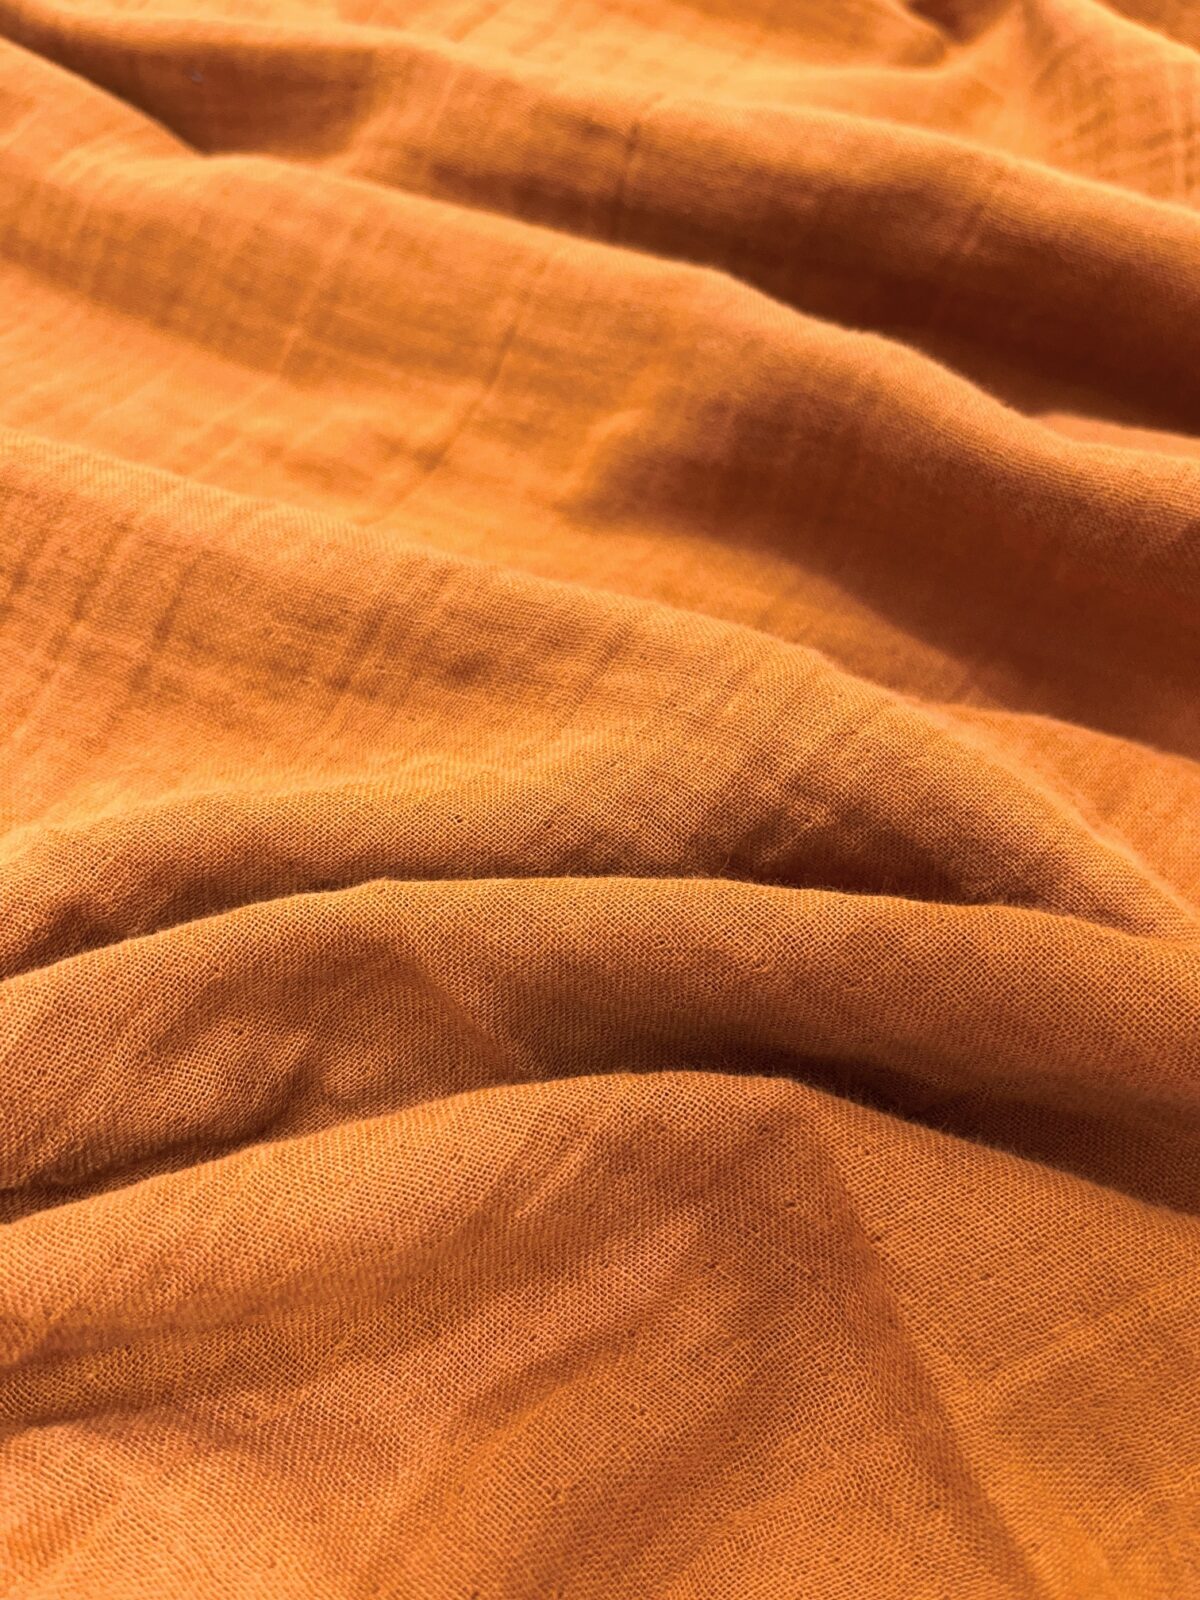 birlik1952 2 kat müslin crinkle krinkle bürümcük double gauze kumaş fabric dress cotton whosale muslin karamel caramel